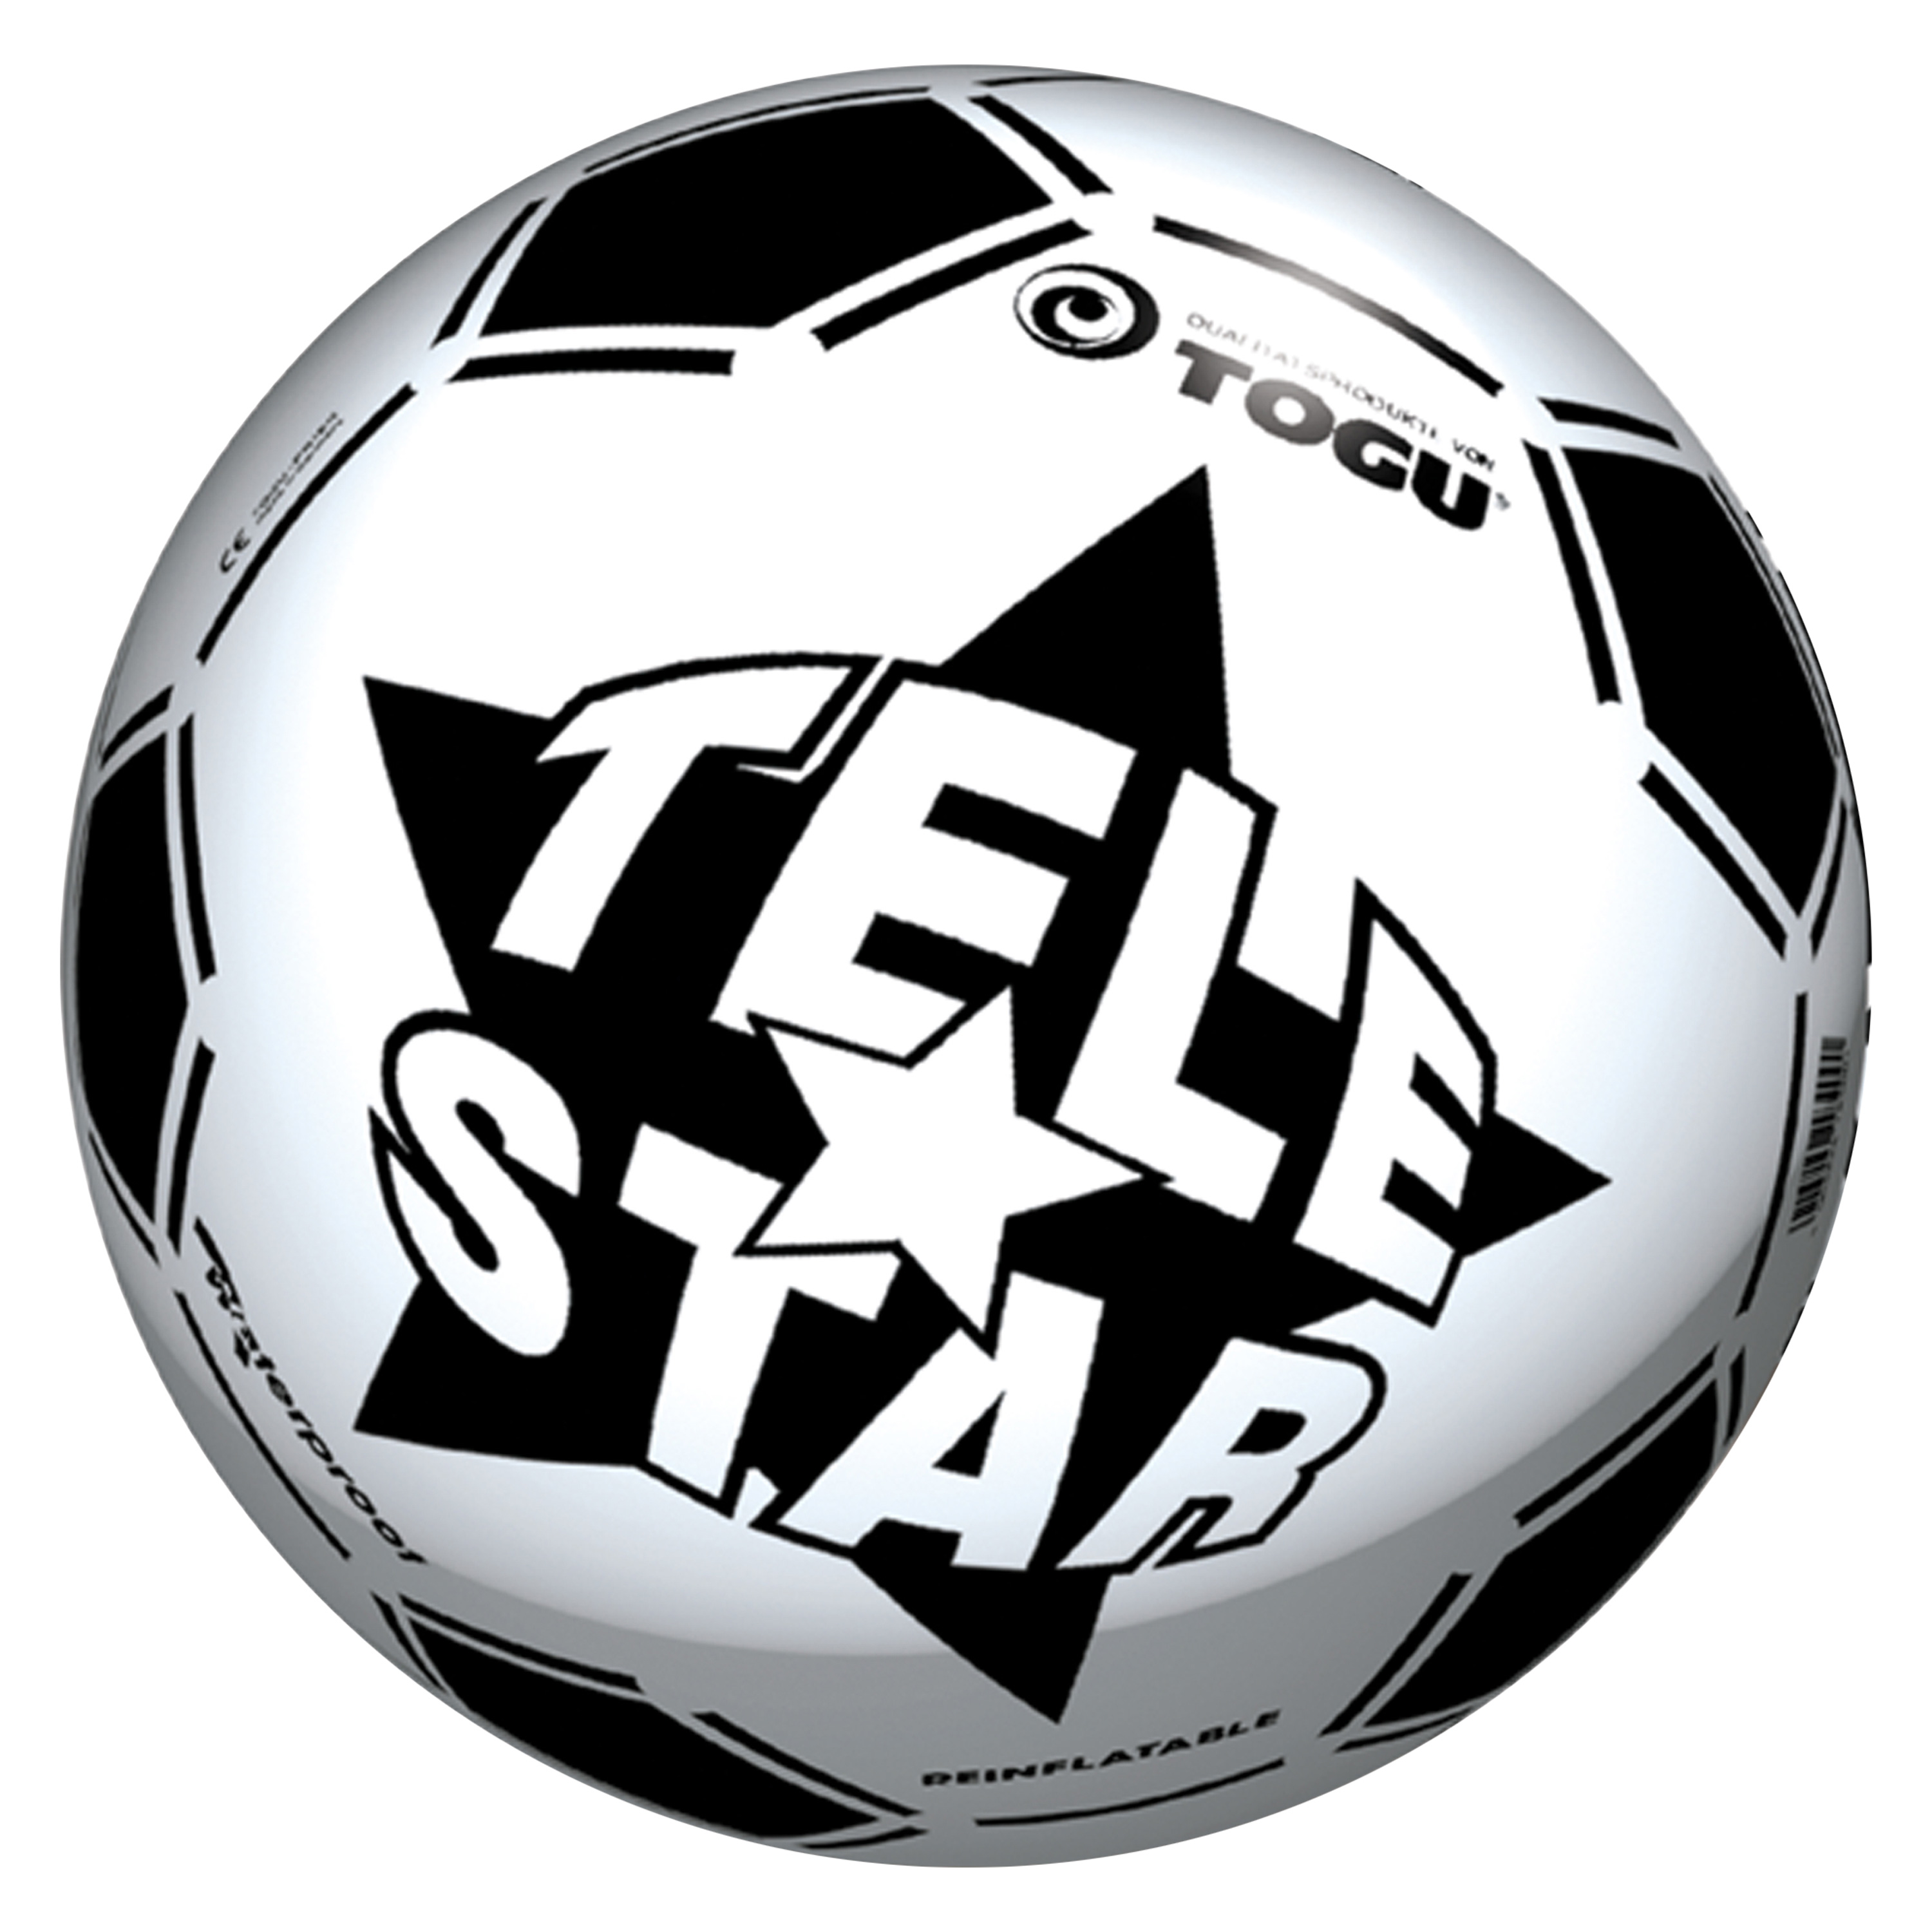 Fußball 'Telestar', Ø 23 cm